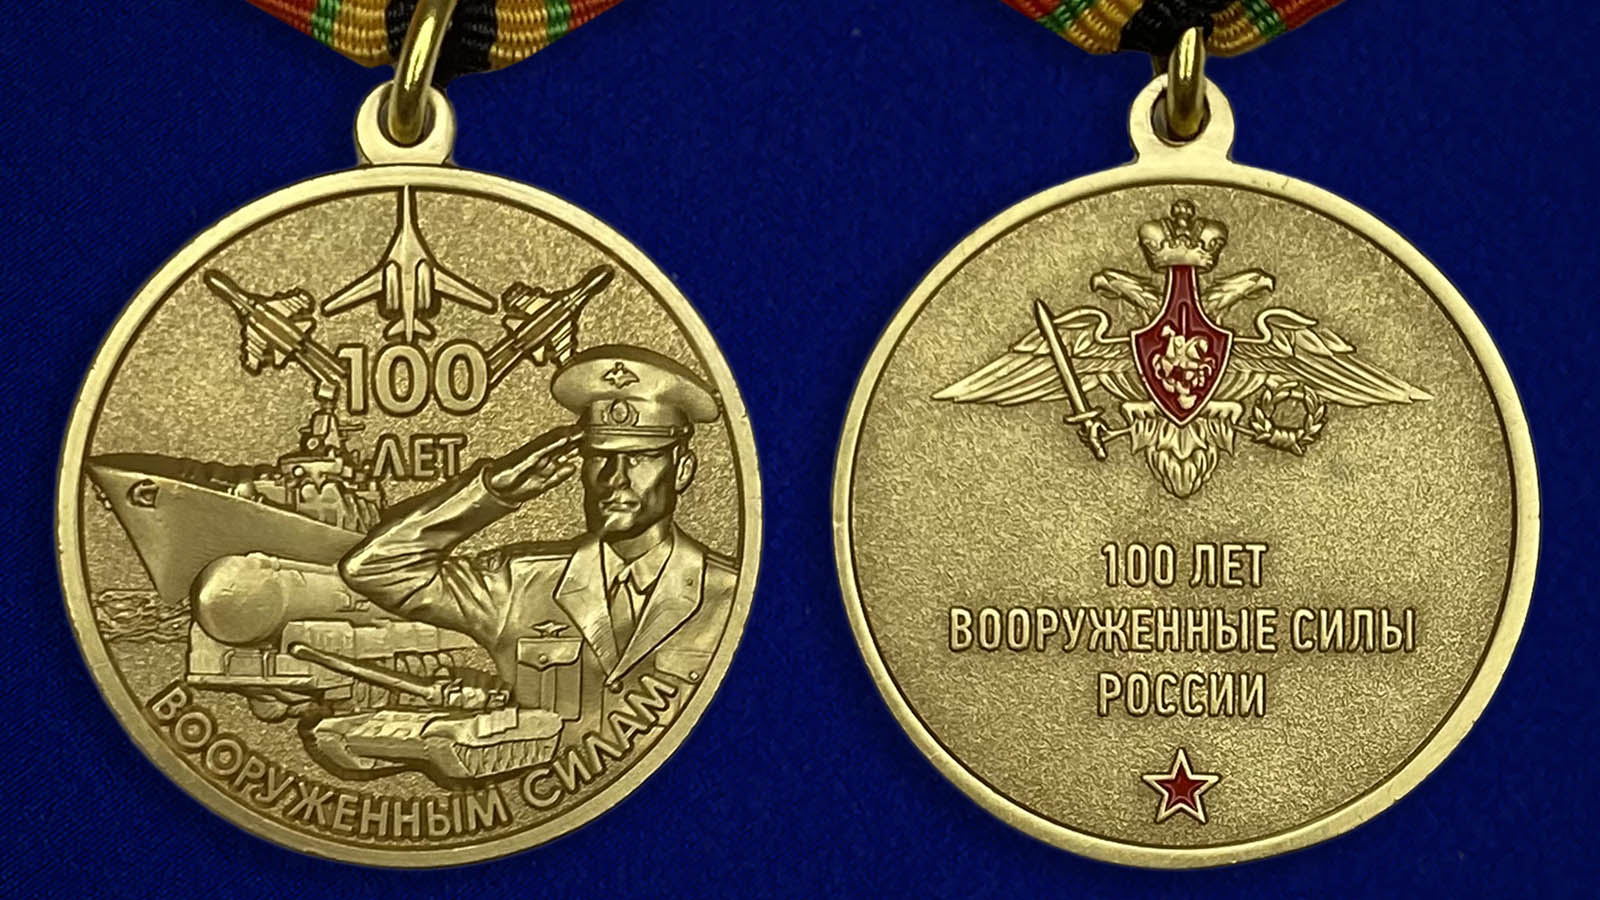 Юбилейная медаль "100-летие Вооруженных сил России" с доставкой